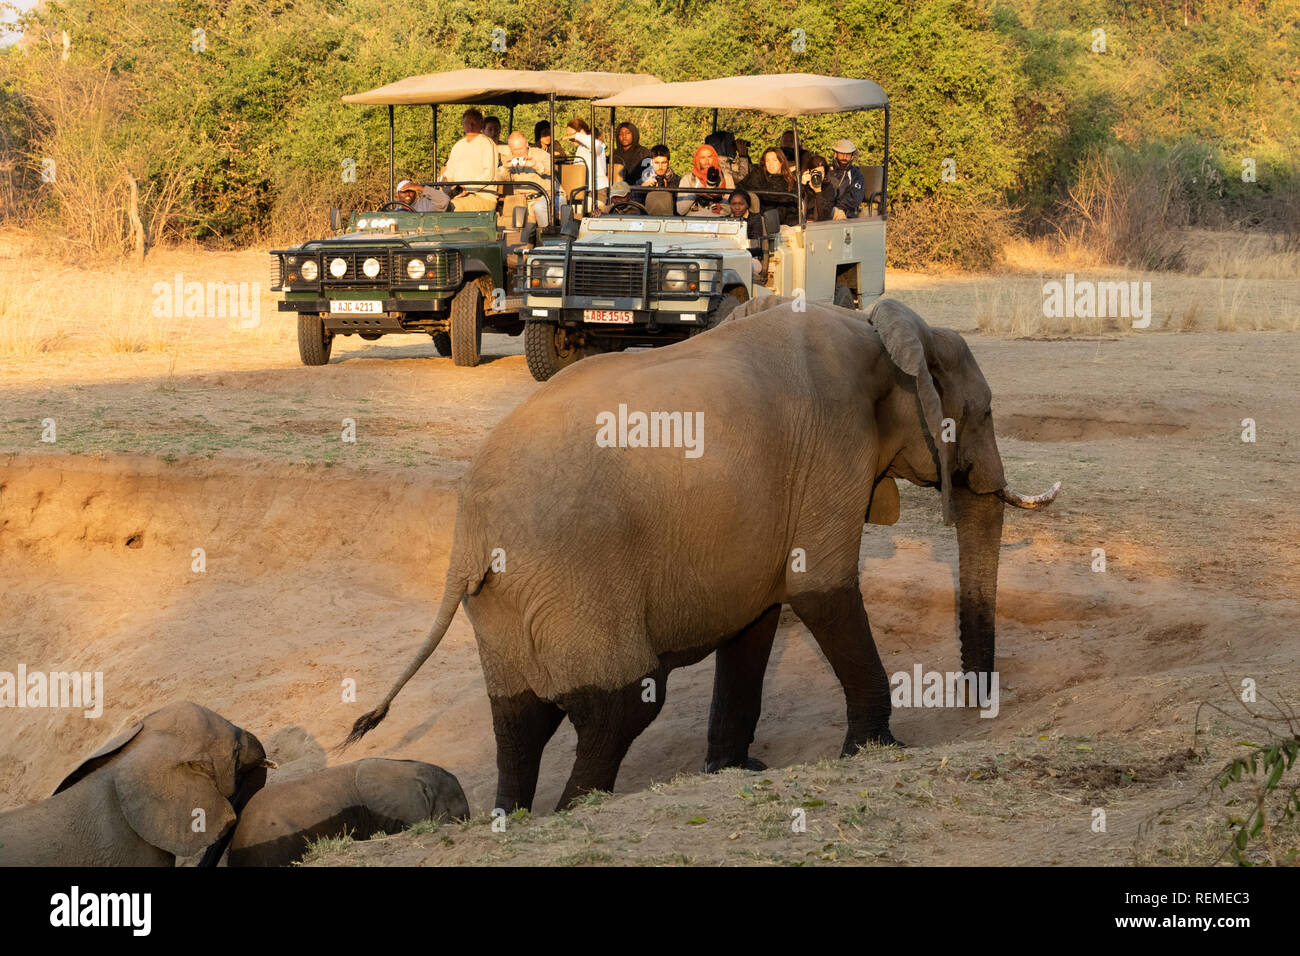 Afrikanischer Elefant klettern auf der Ufer mit Touristen im Hintergrund, South Luangwa National Park, Sambia Stockfoto